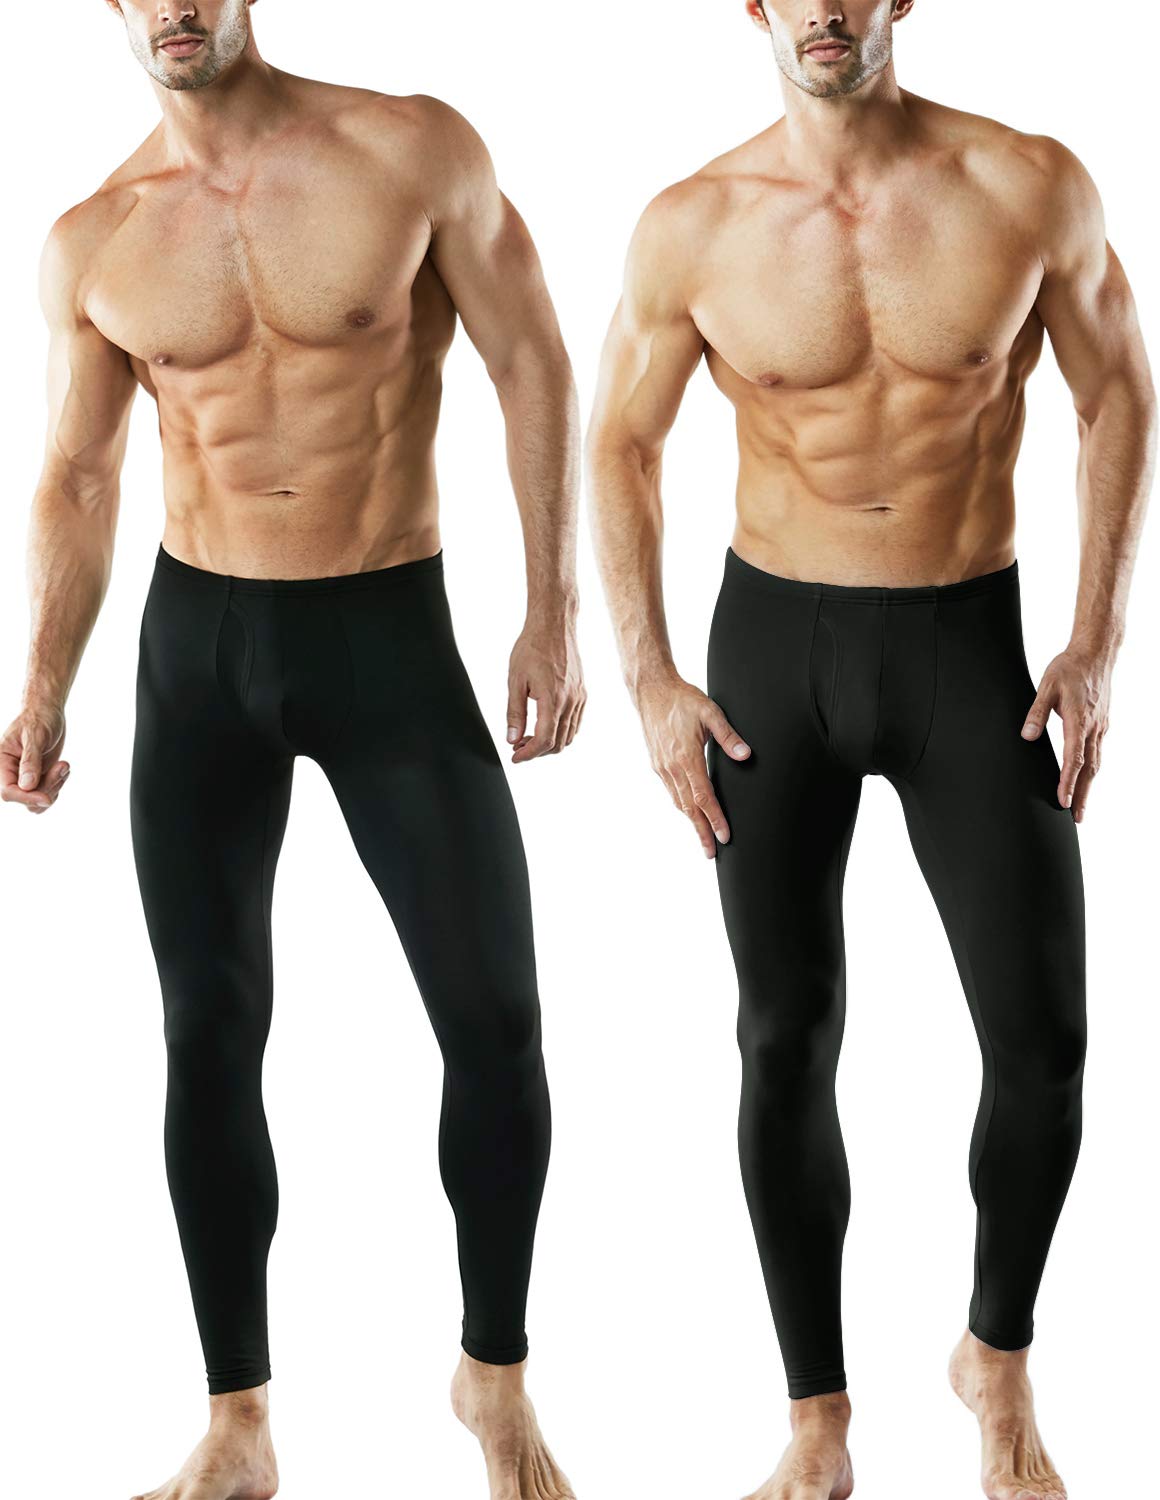 TSLA Men's Thermal Underwear Pants, Heated Warm Fleece Lined Long